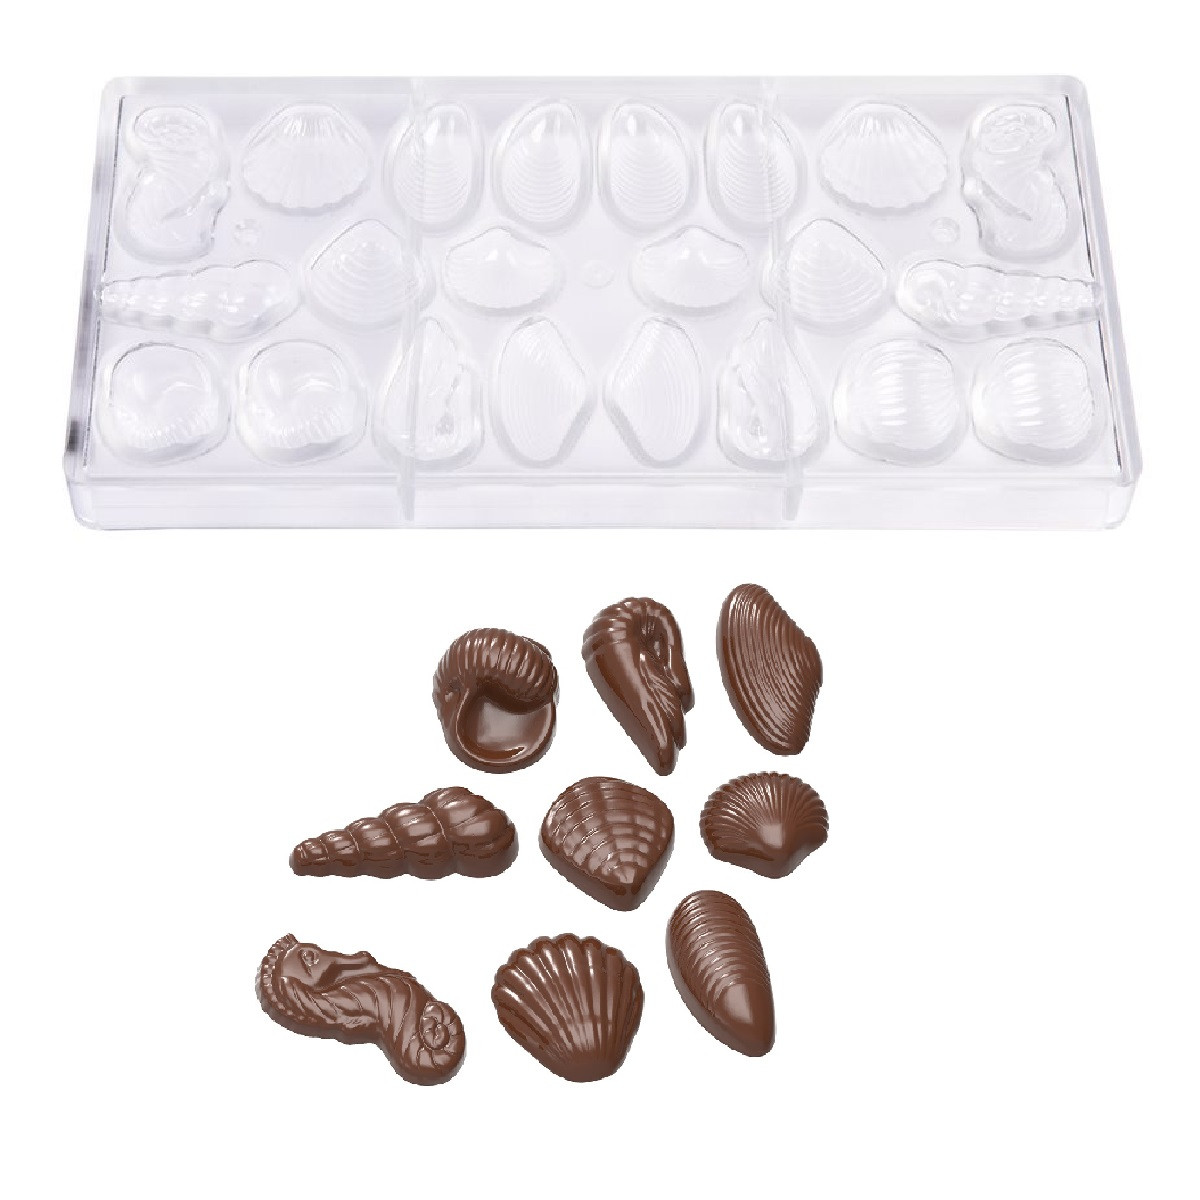 Chocolademal Chocolate World Zeefiguren (22x)